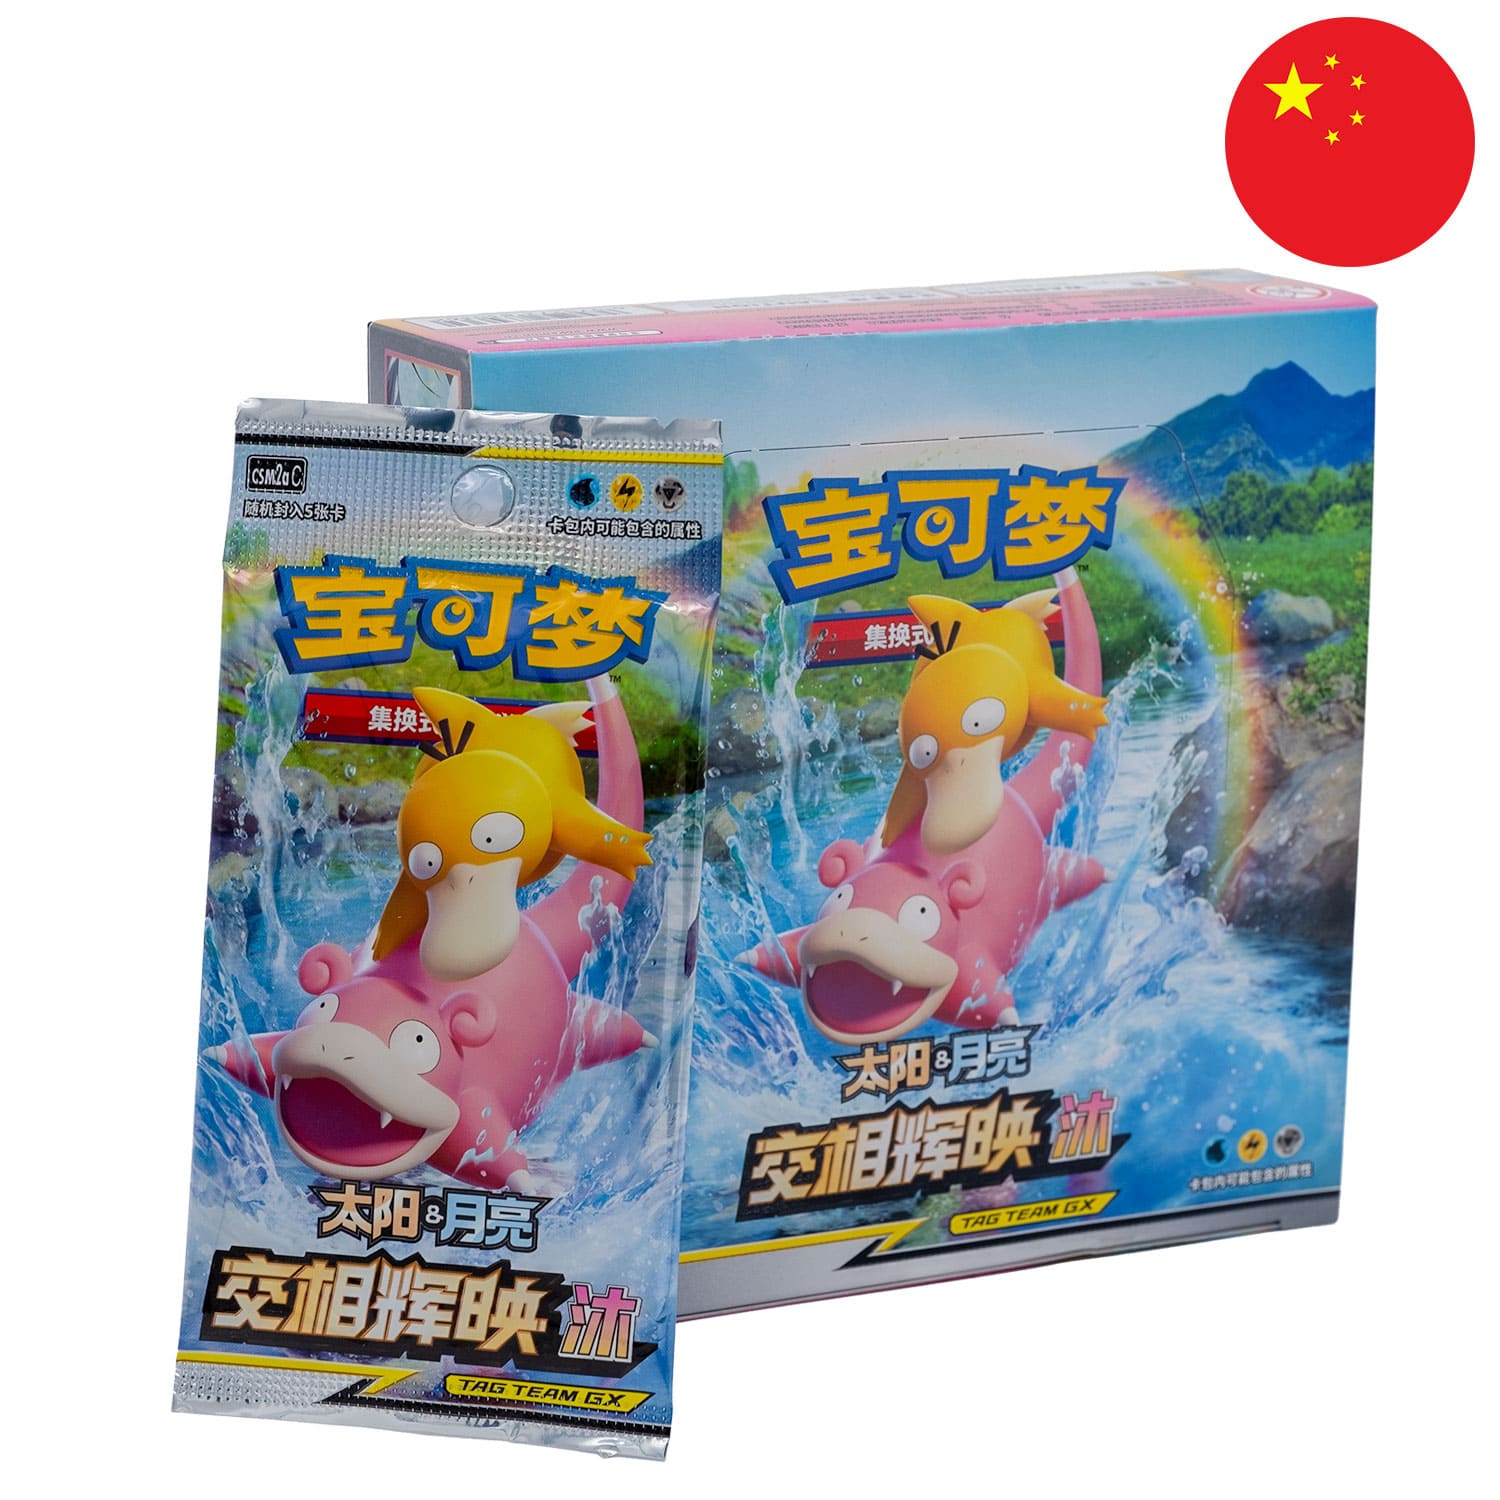 Das Tag Team GX Pokemon Display Shining Synergy: Shower und dem Boosterpack anliegend, mit der Flagge Chinas in der Ecke.